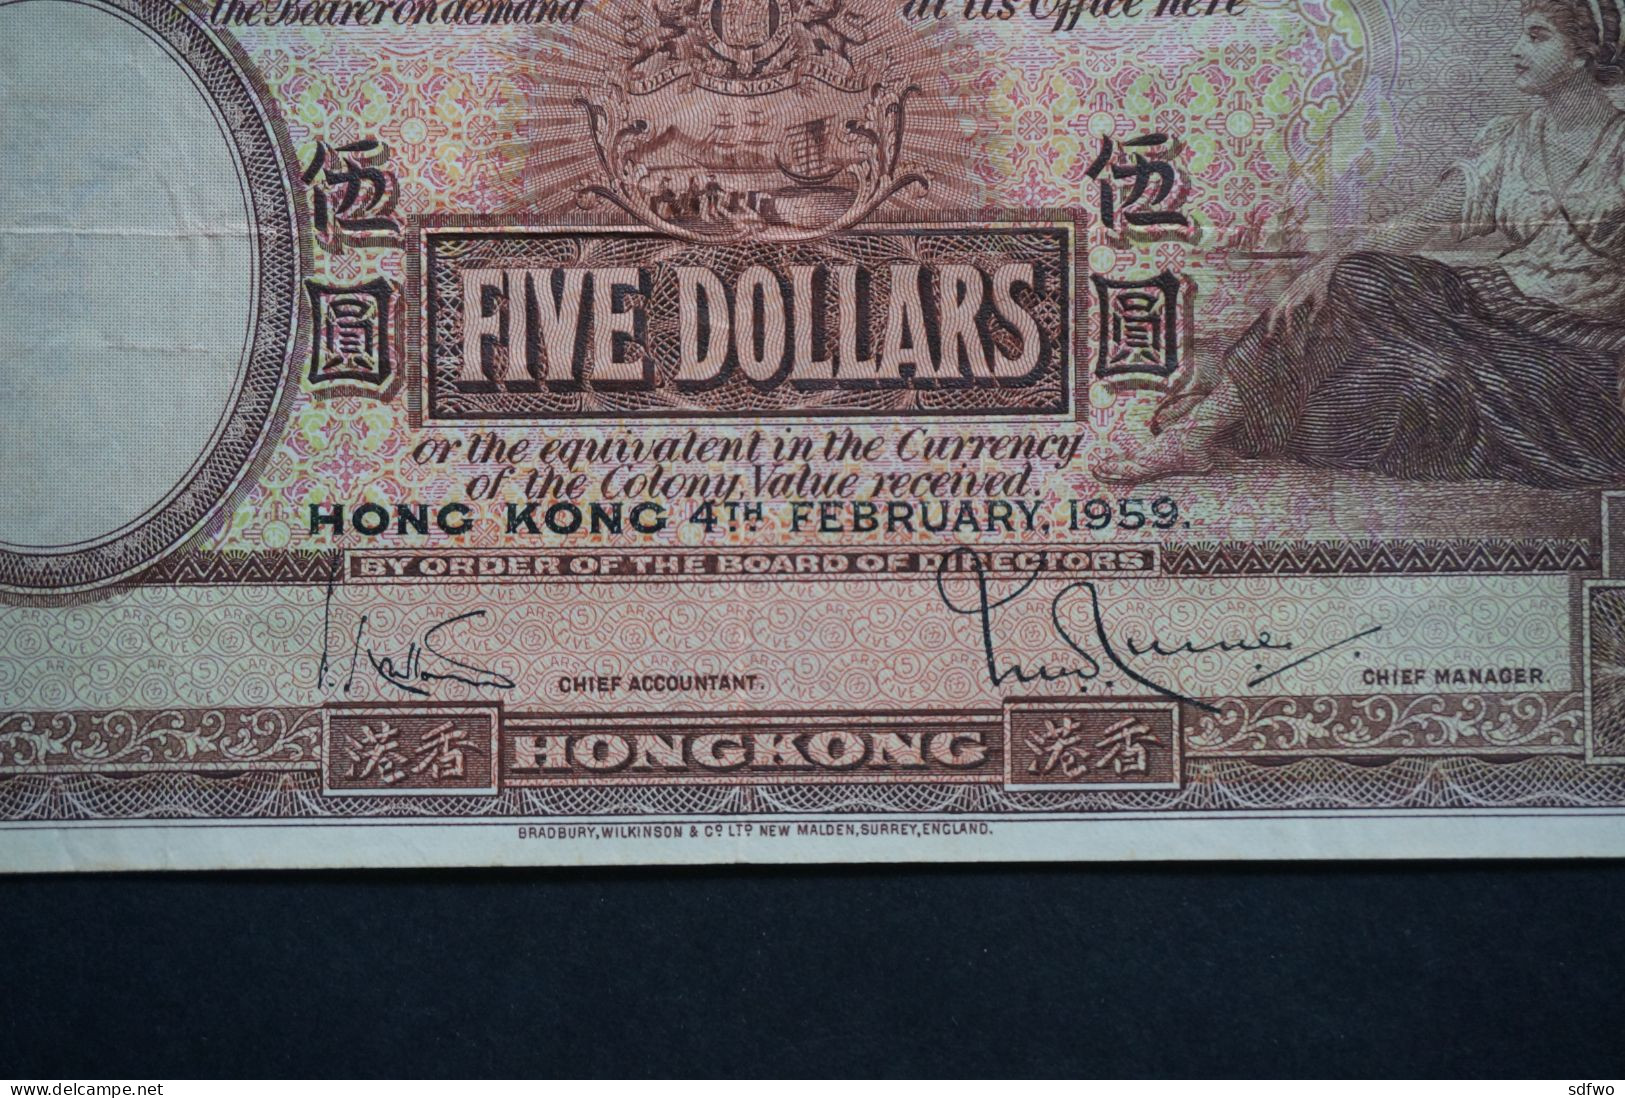 (Tv) 1959 HONG KONG OLD ISSUE - HSBC BANKNOTE 5 DOLLARS #M/H 503,623 - Hongkong